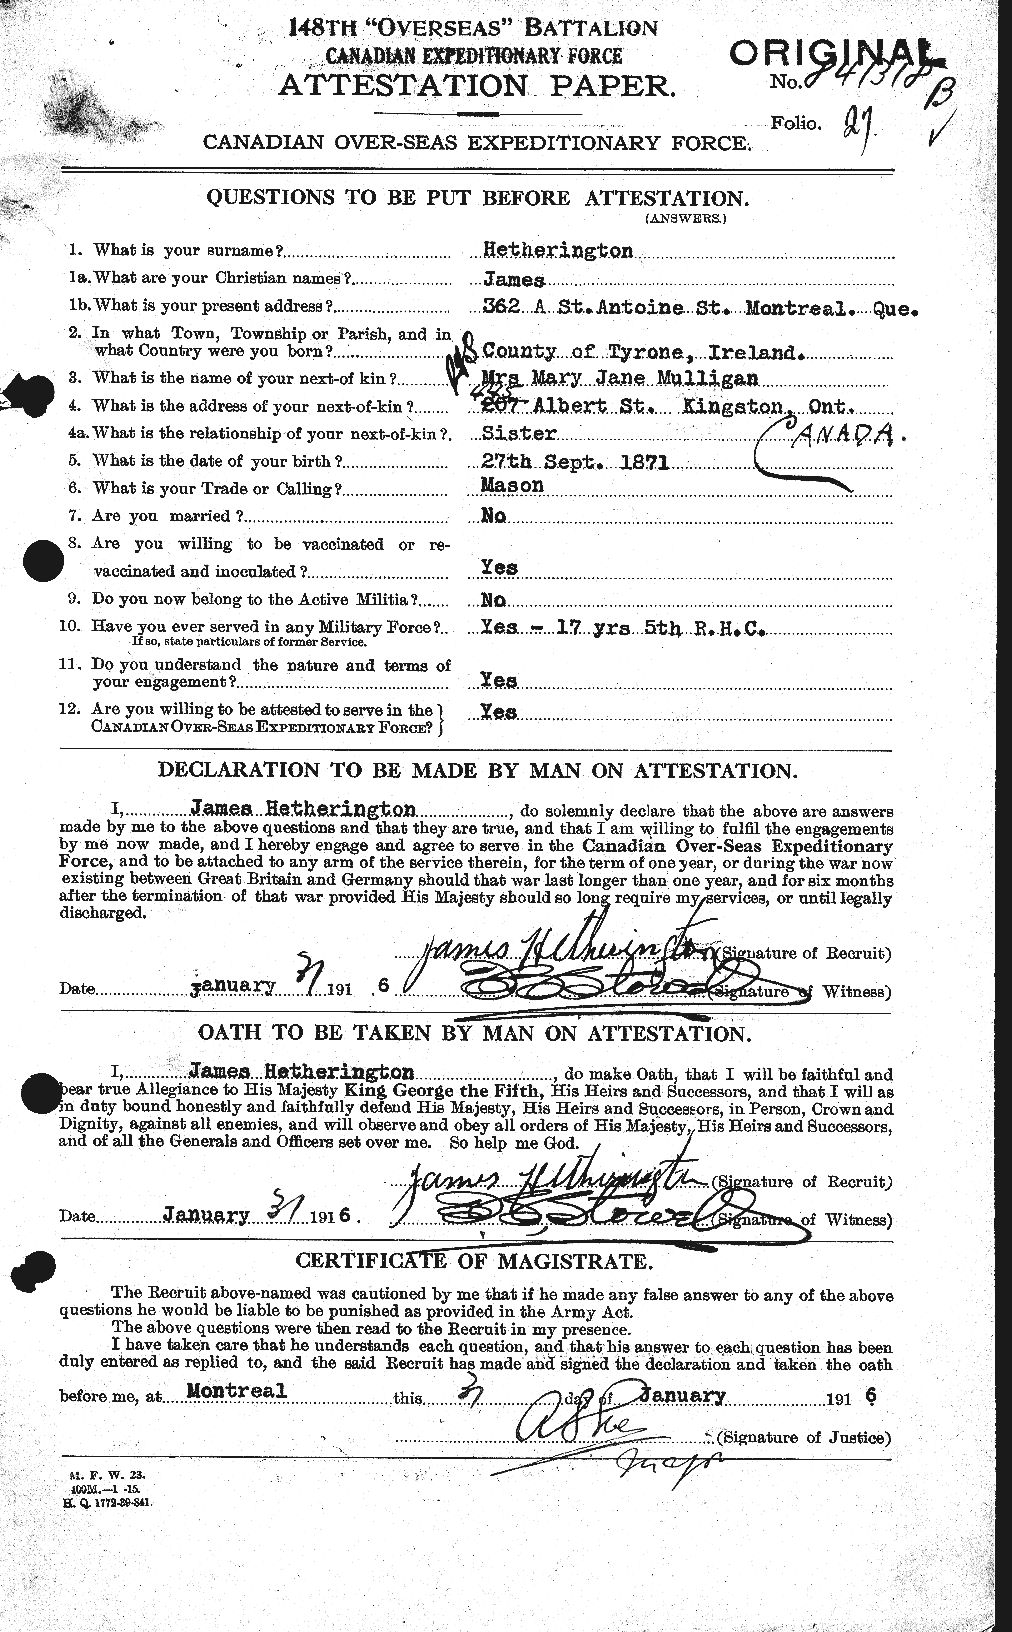 Dossiers du Personnel de la Première Guerre mondiale - CEC 390702a